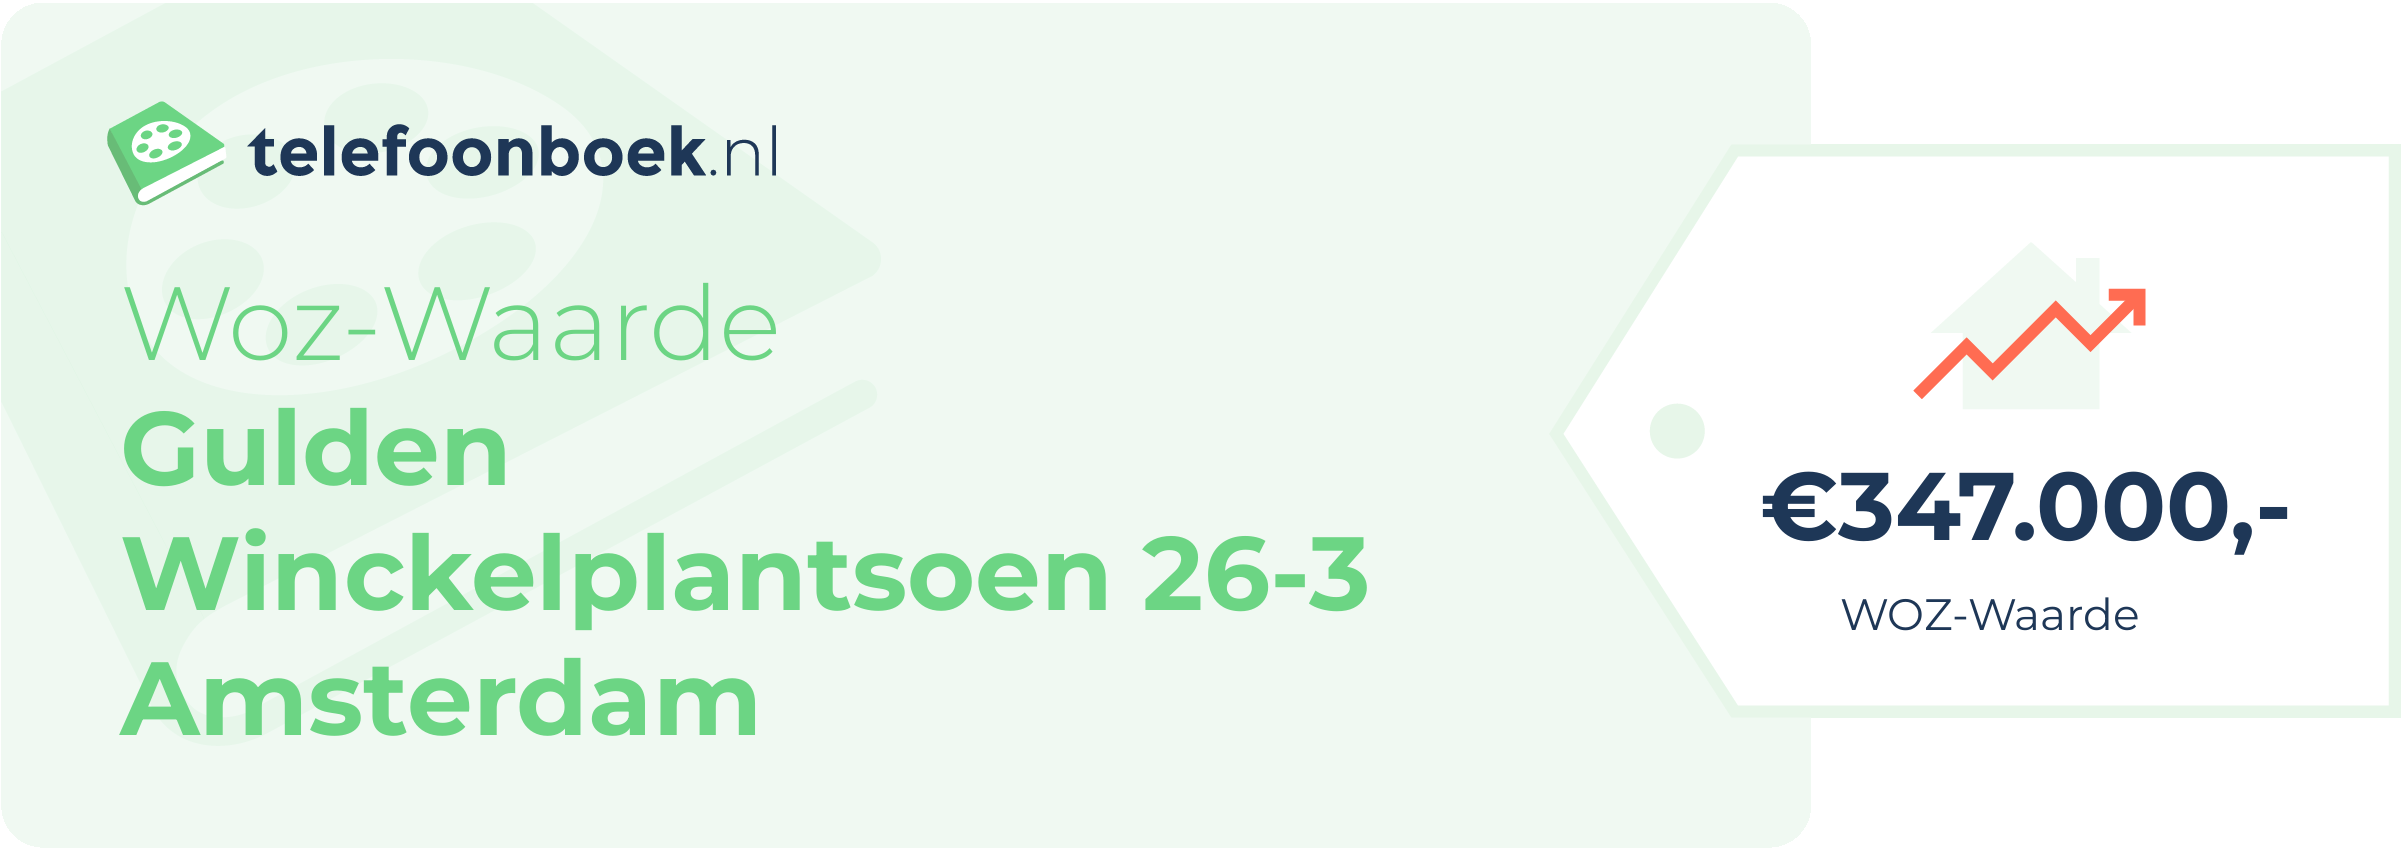 WOZ-waarde Gulden Winckelplantsoen 26-3 Amsterdam